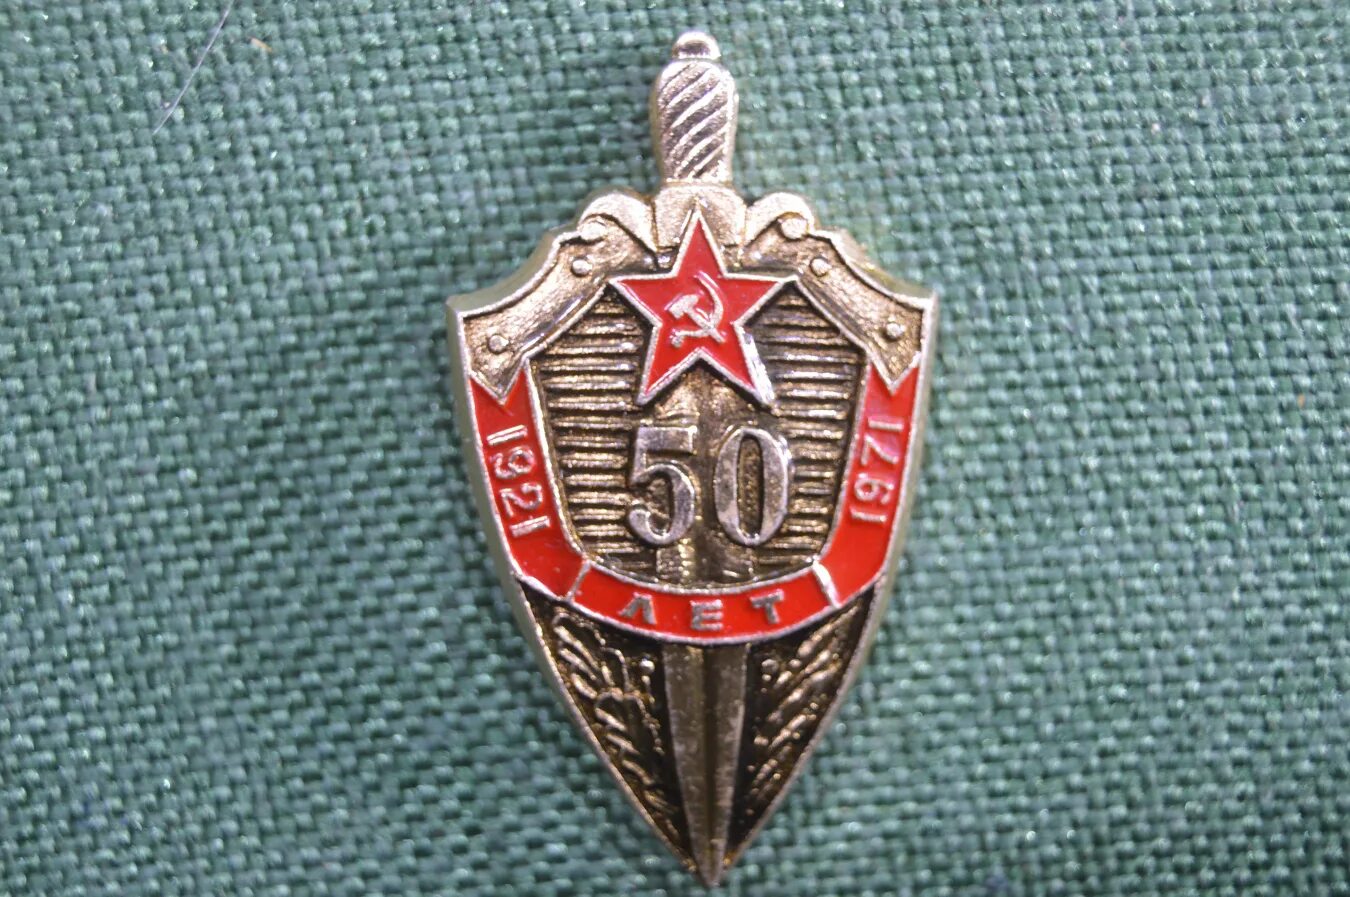 8 е управление. Знак КГБ 50 лет 1921-1971. Знак 50 лет КГБ. Знак «КГБ СССР». Знак шифровальной службы.